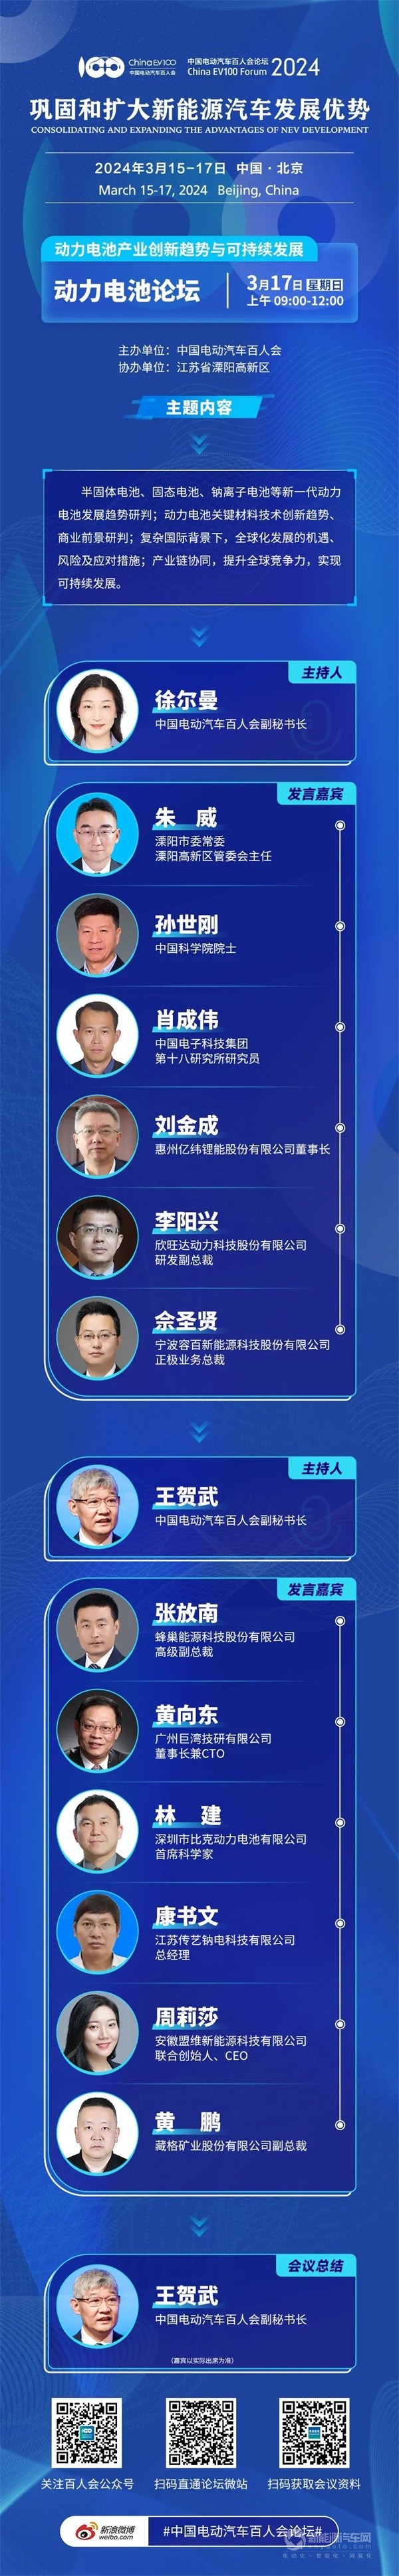 百人会论坛(2024)全议程